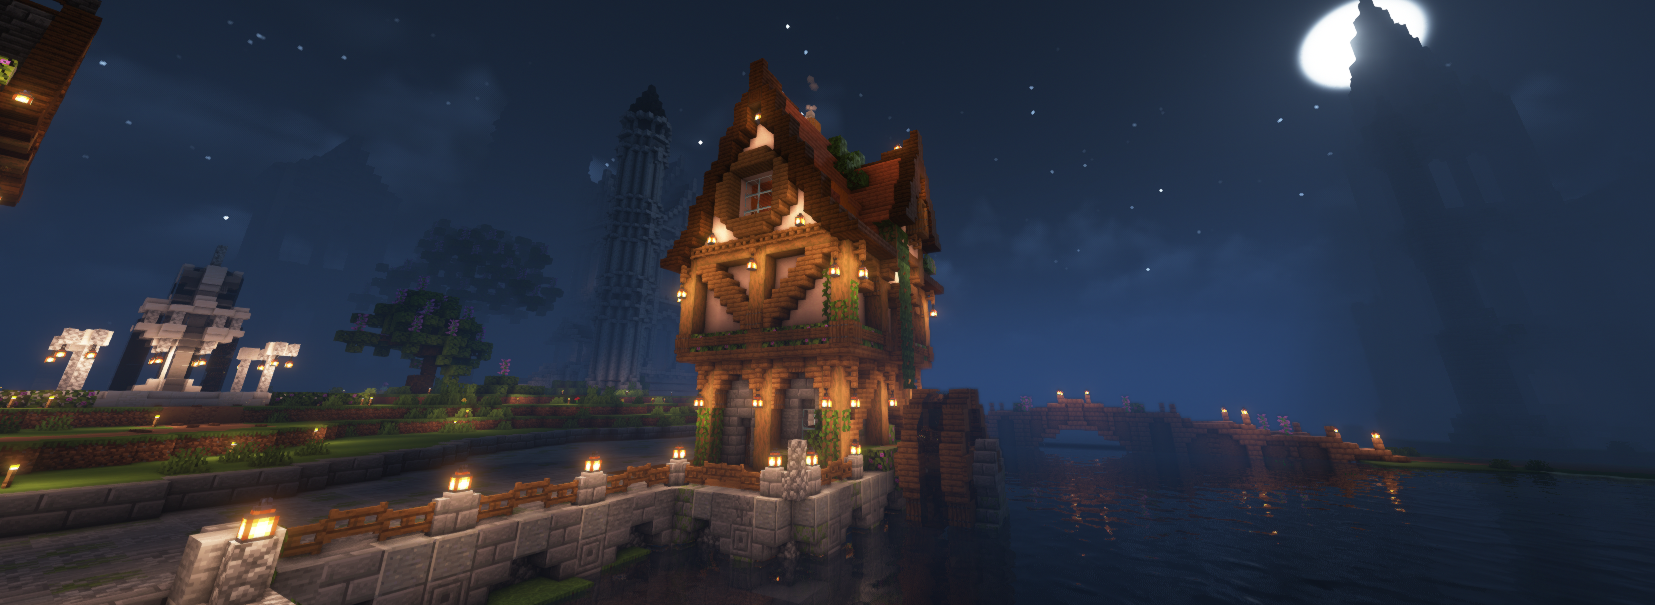 The Tavern Keeper's Mill